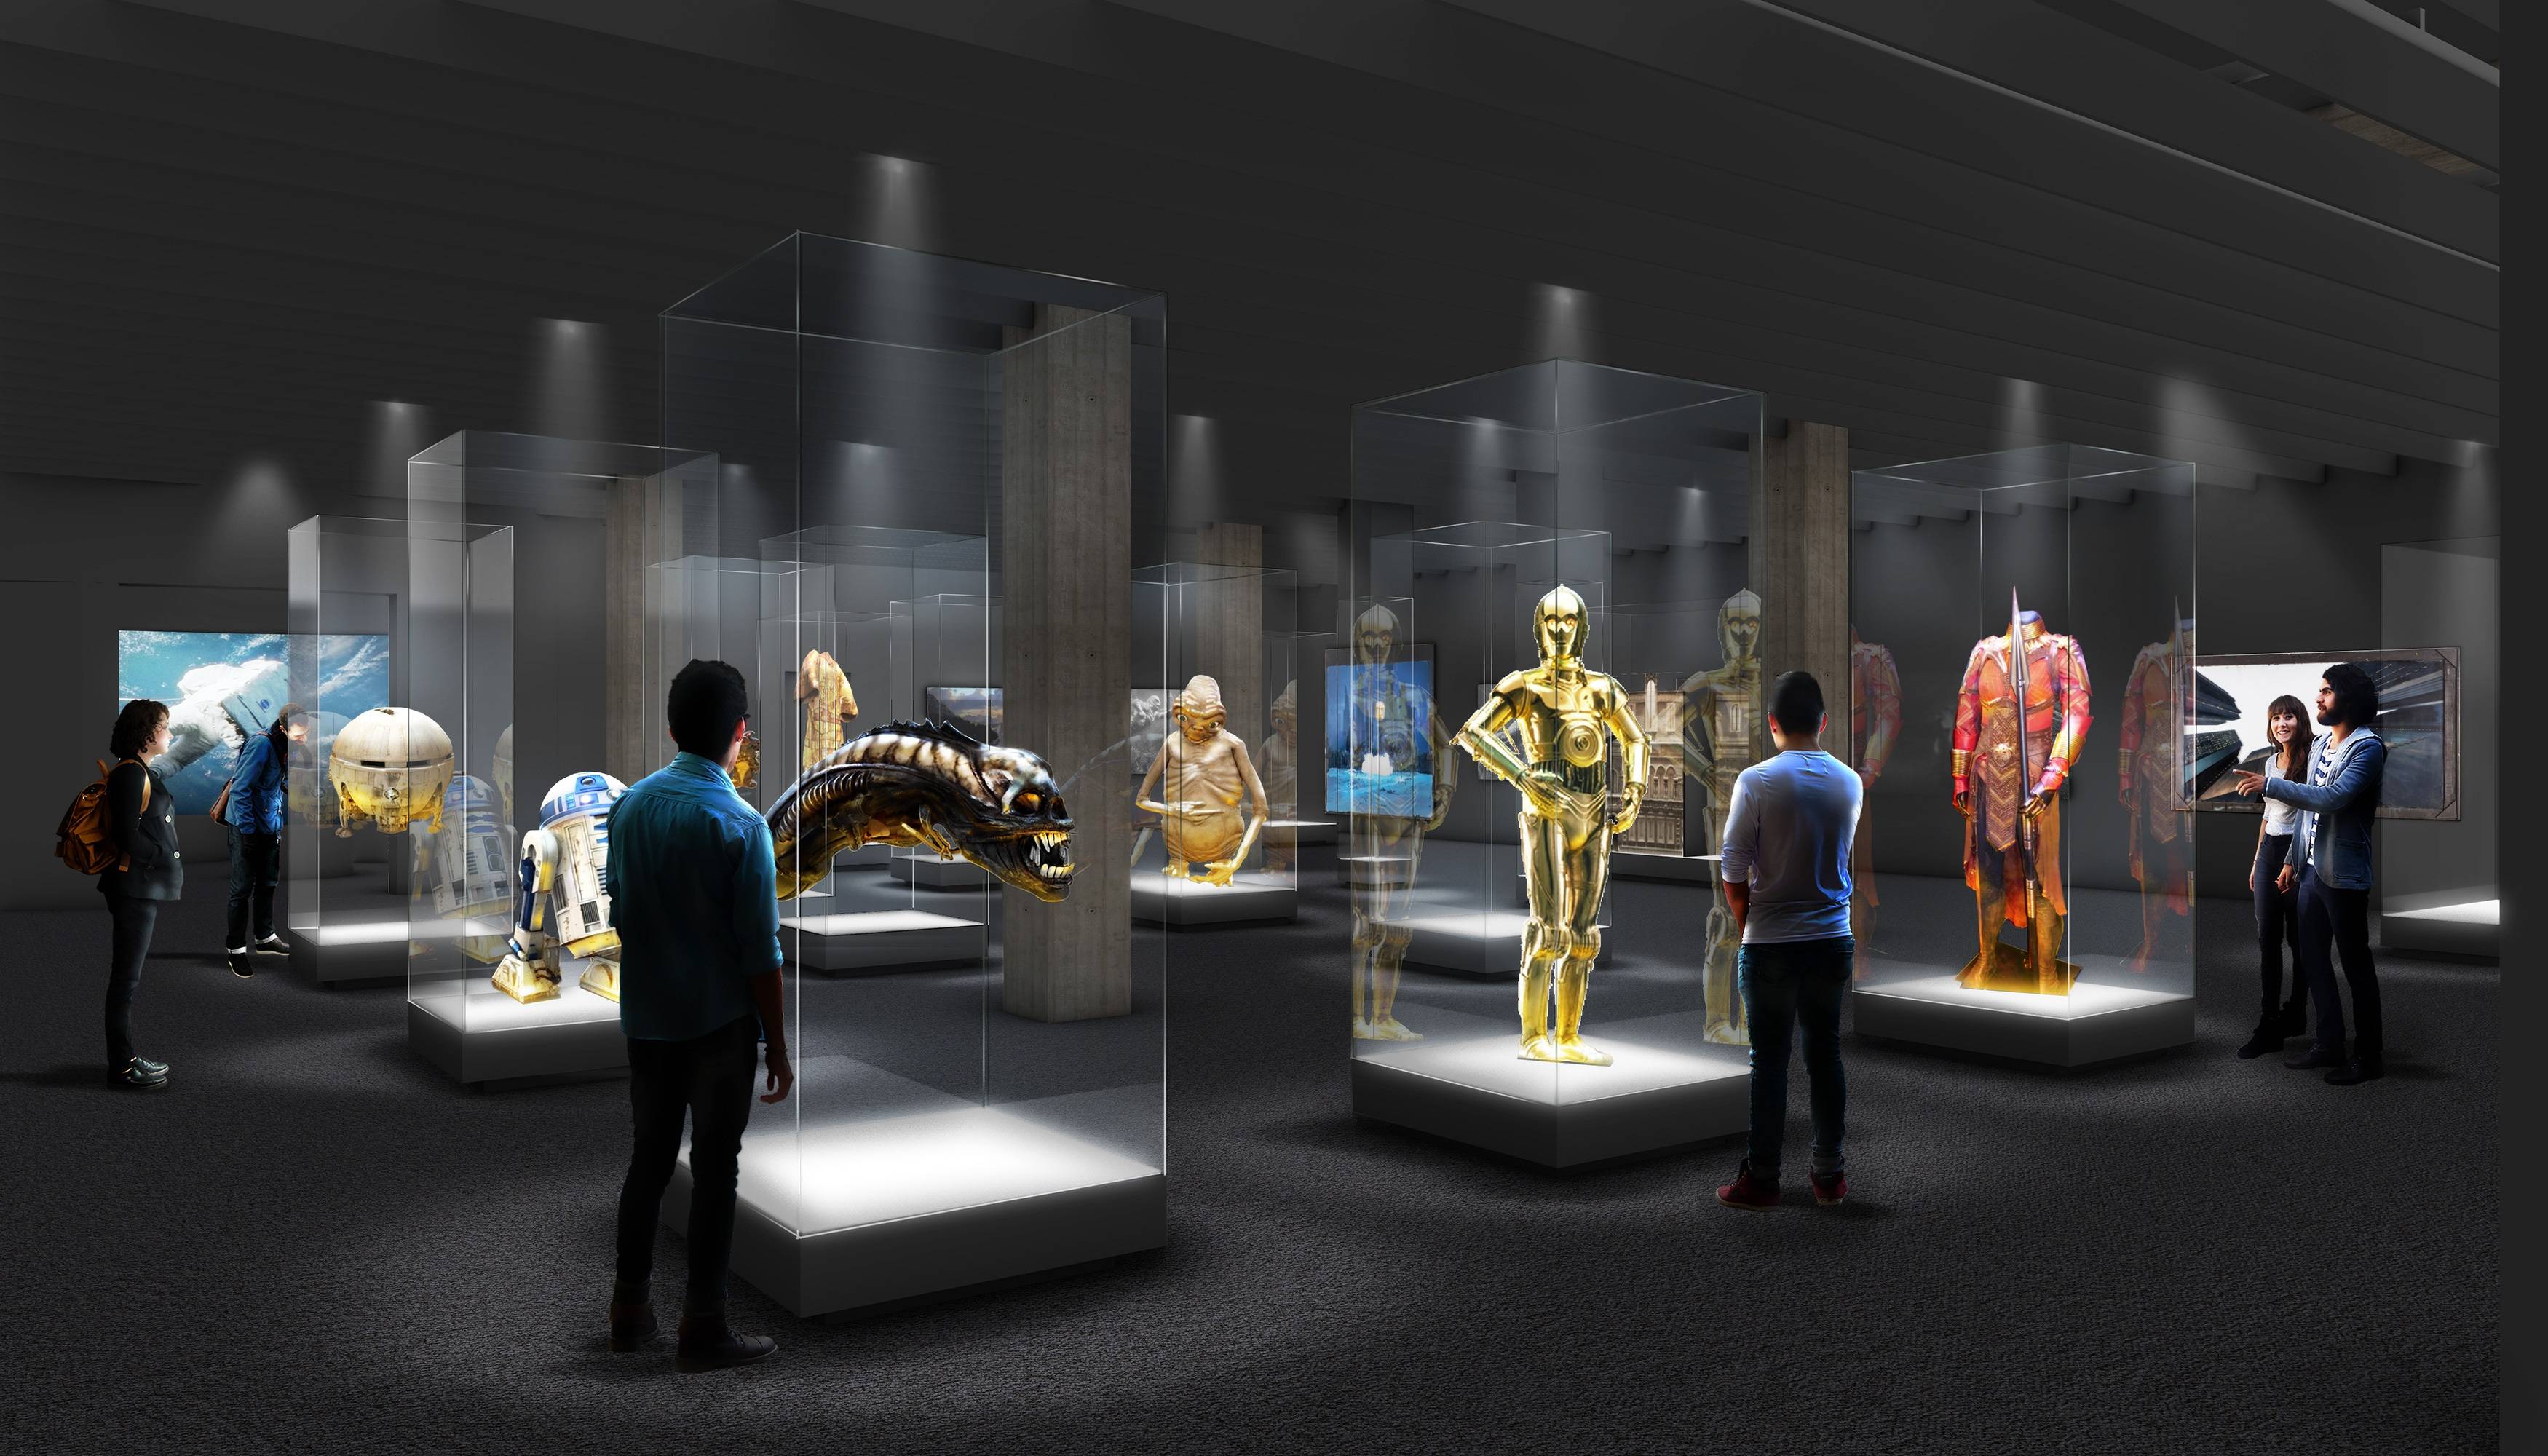 图片展示了一群人在现代化的展览馆内参观，馆内陈列着多个照明下的透明展柜，其中展示着不同的机器人模型。